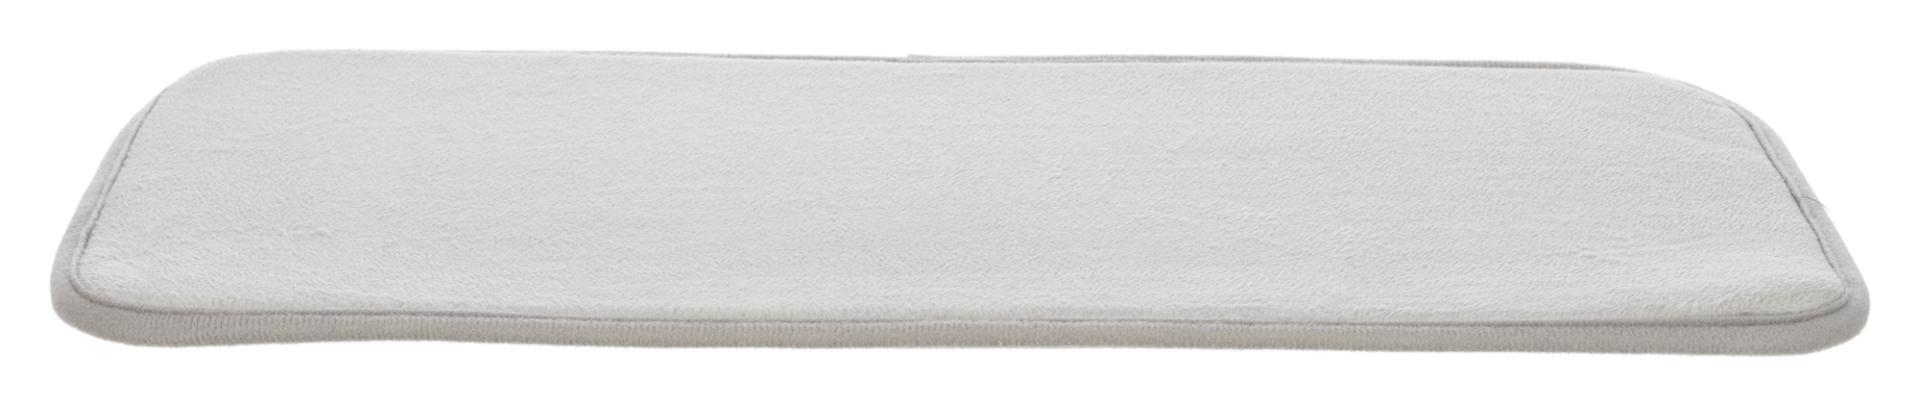 TRIXIE Anti-Rutsch Thermoeinlage für Capri 3 #3983 / 39861, 29 x 51 cm, grau